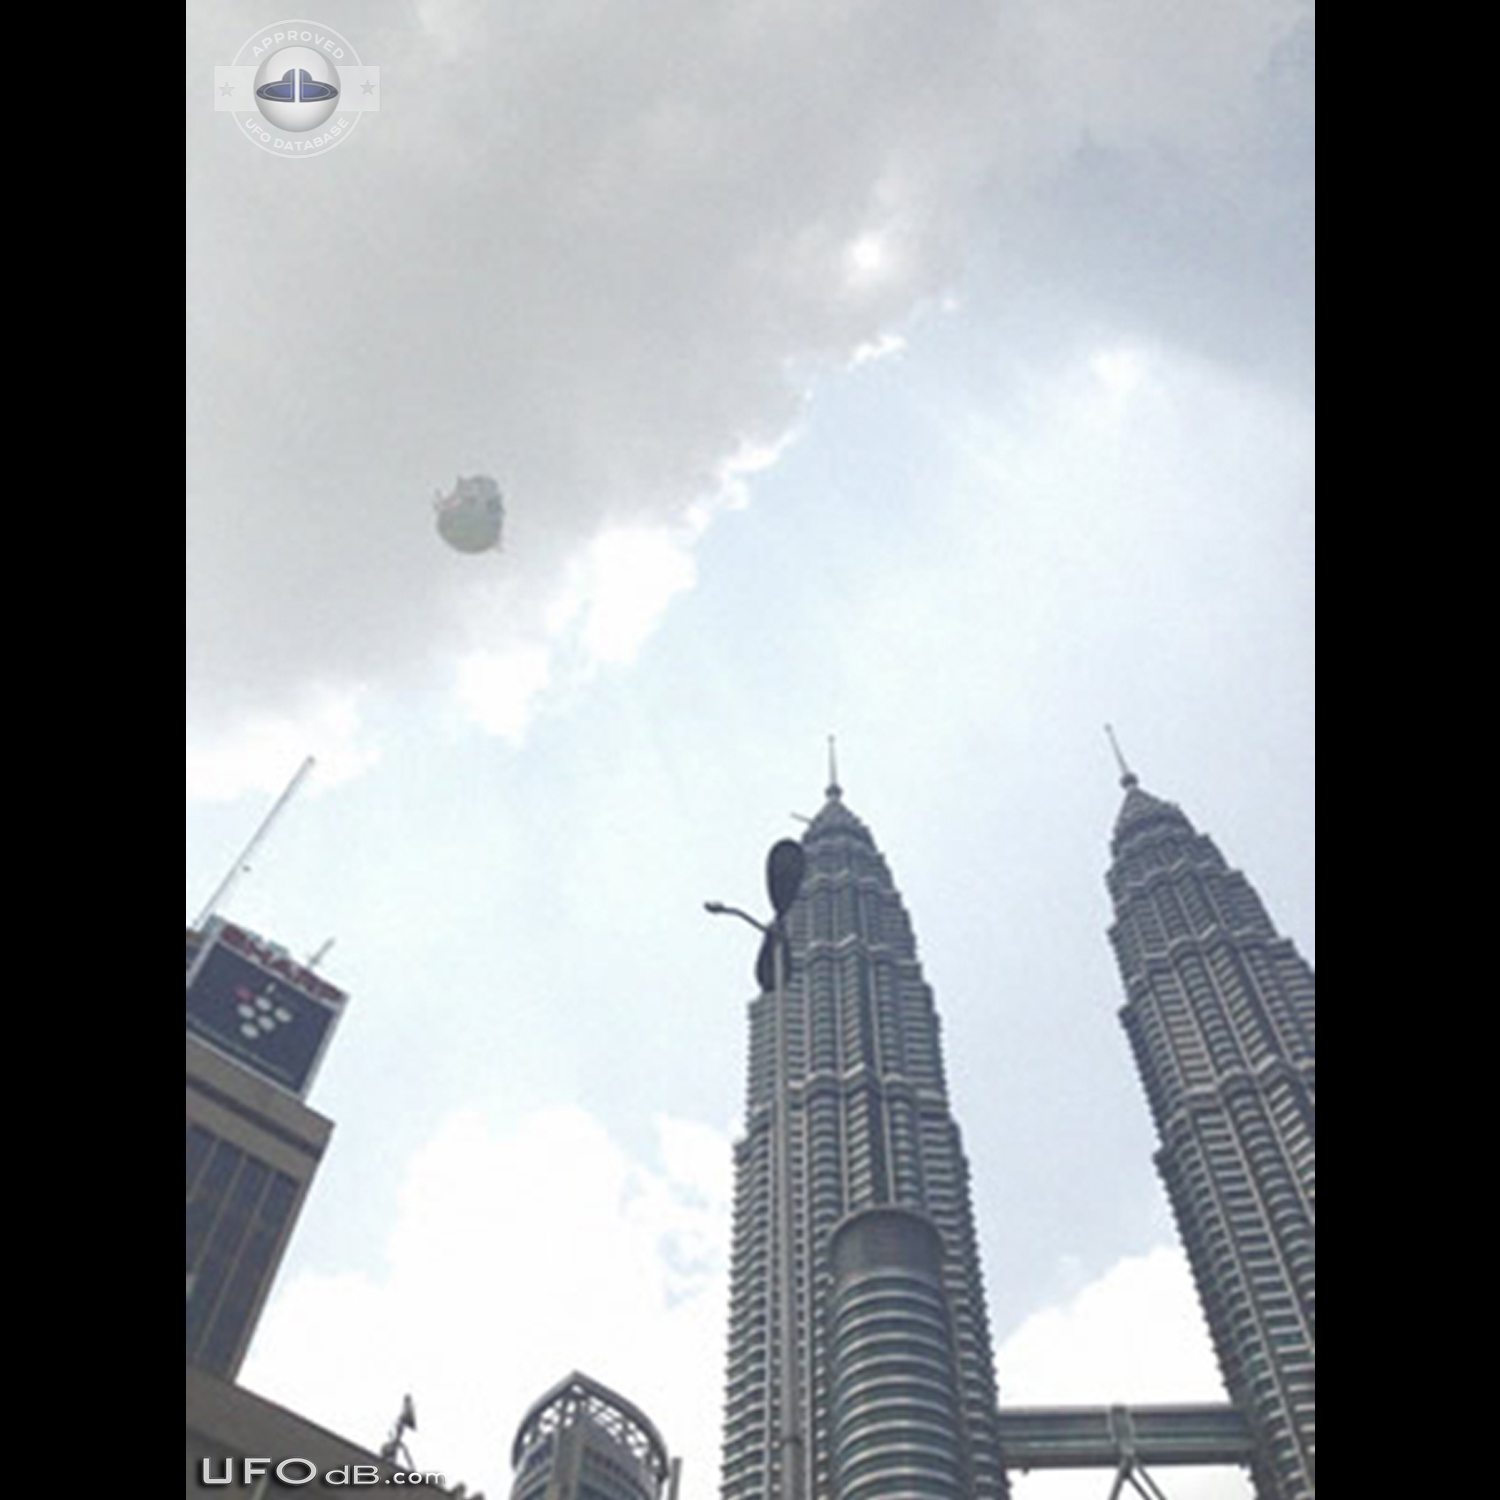 UFO near the Petronas Twin Towers in Kuala Lumpur, Malaysia - May 2014 UFO Picture #565-1